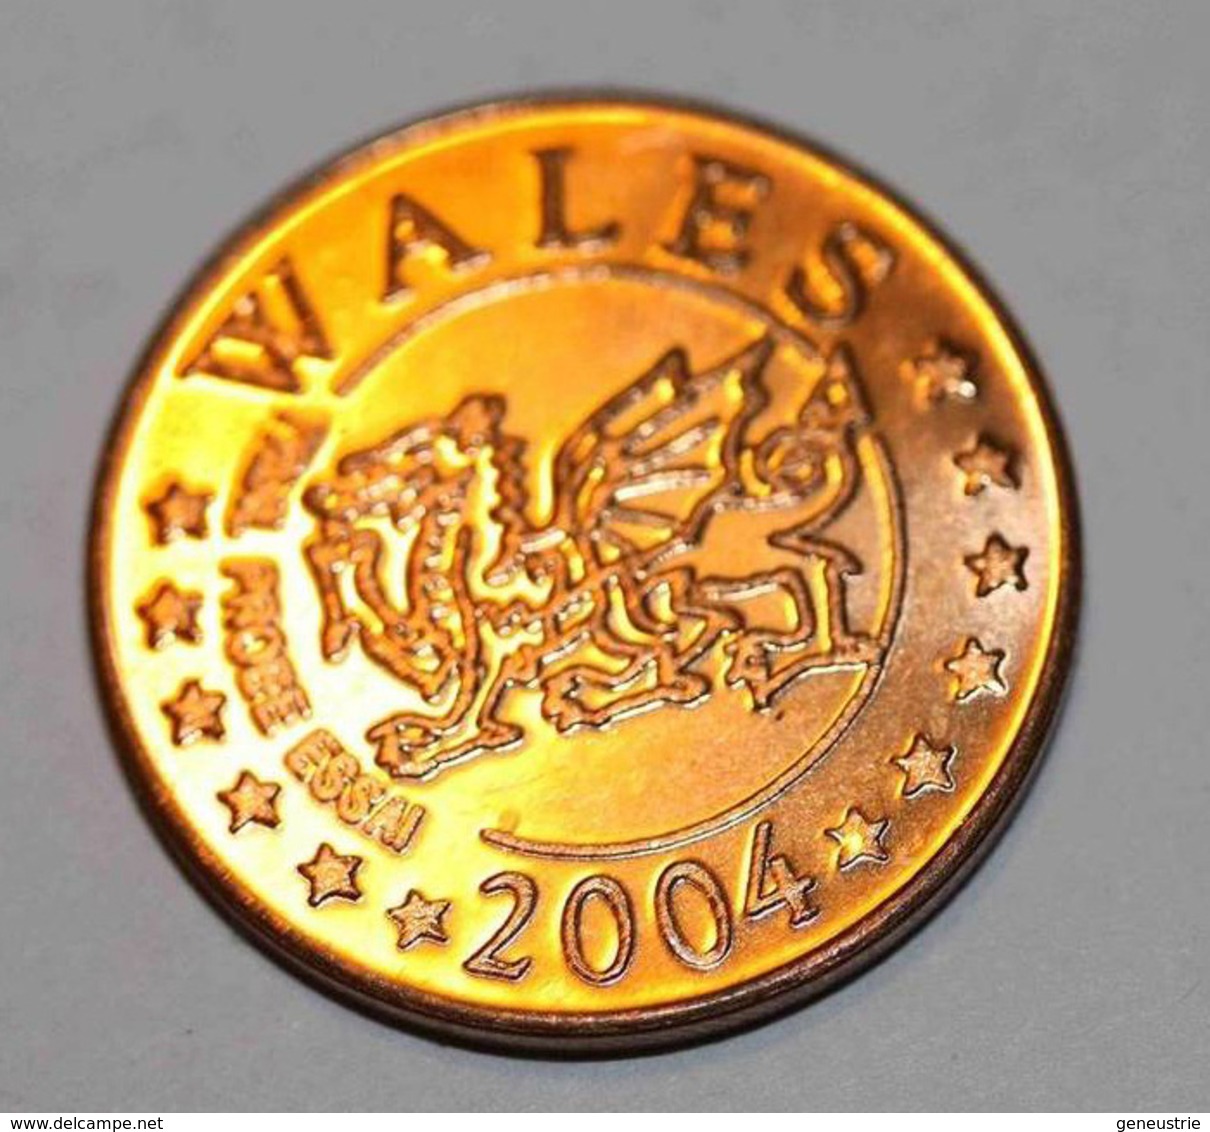 Wales - Pays De Galles 2004 BU EURO PATTERN EURO ESSAI 5 Cents - 5 Euro Cent - Essais Privés / Non-officiels